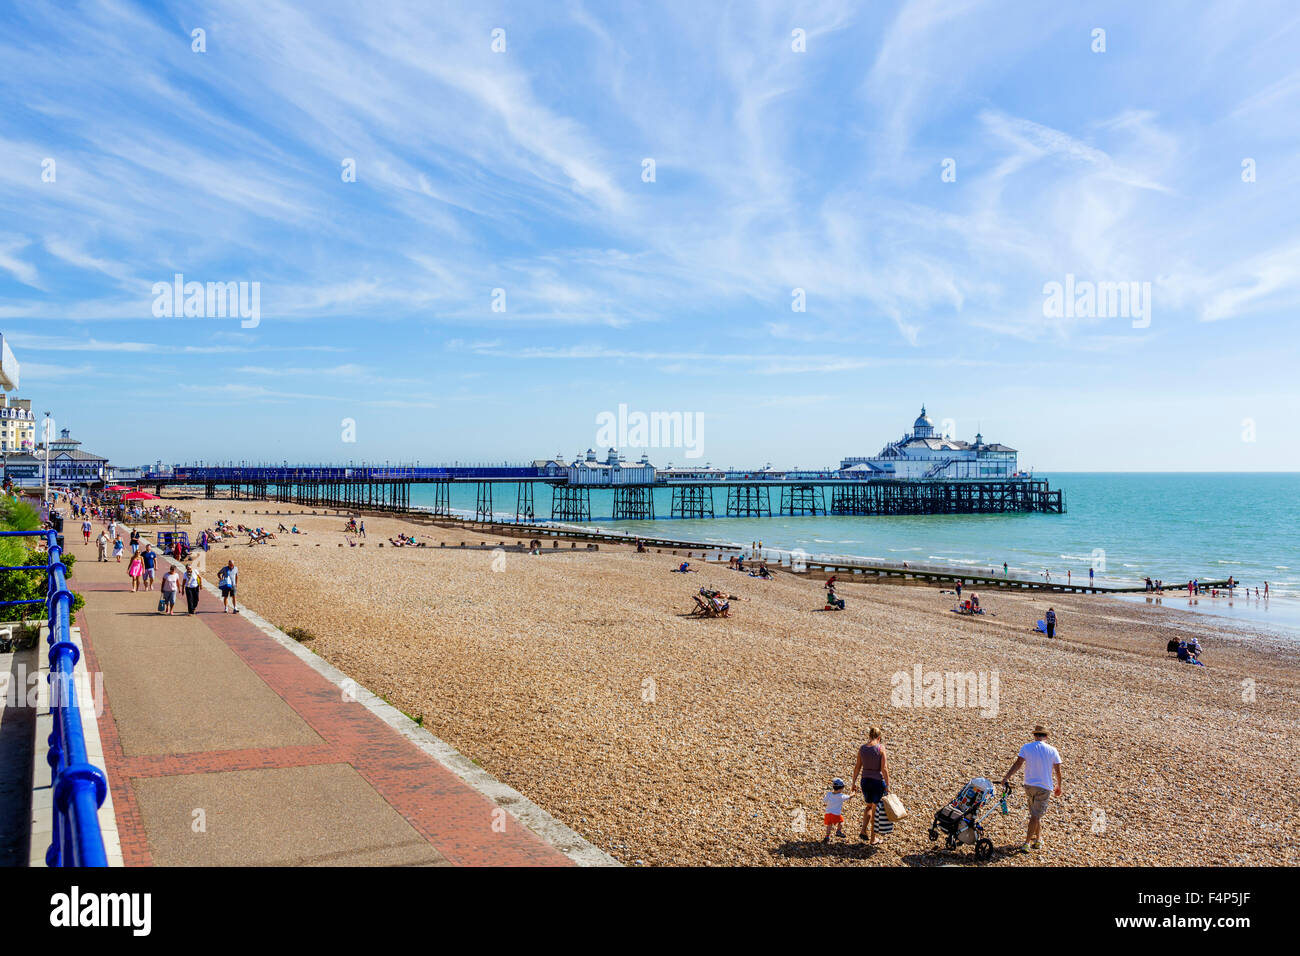 La playa y el muelle, Grand Parade, Eastbourne, East Sussex, Inglaterra, Reino Unido. Foto de stock